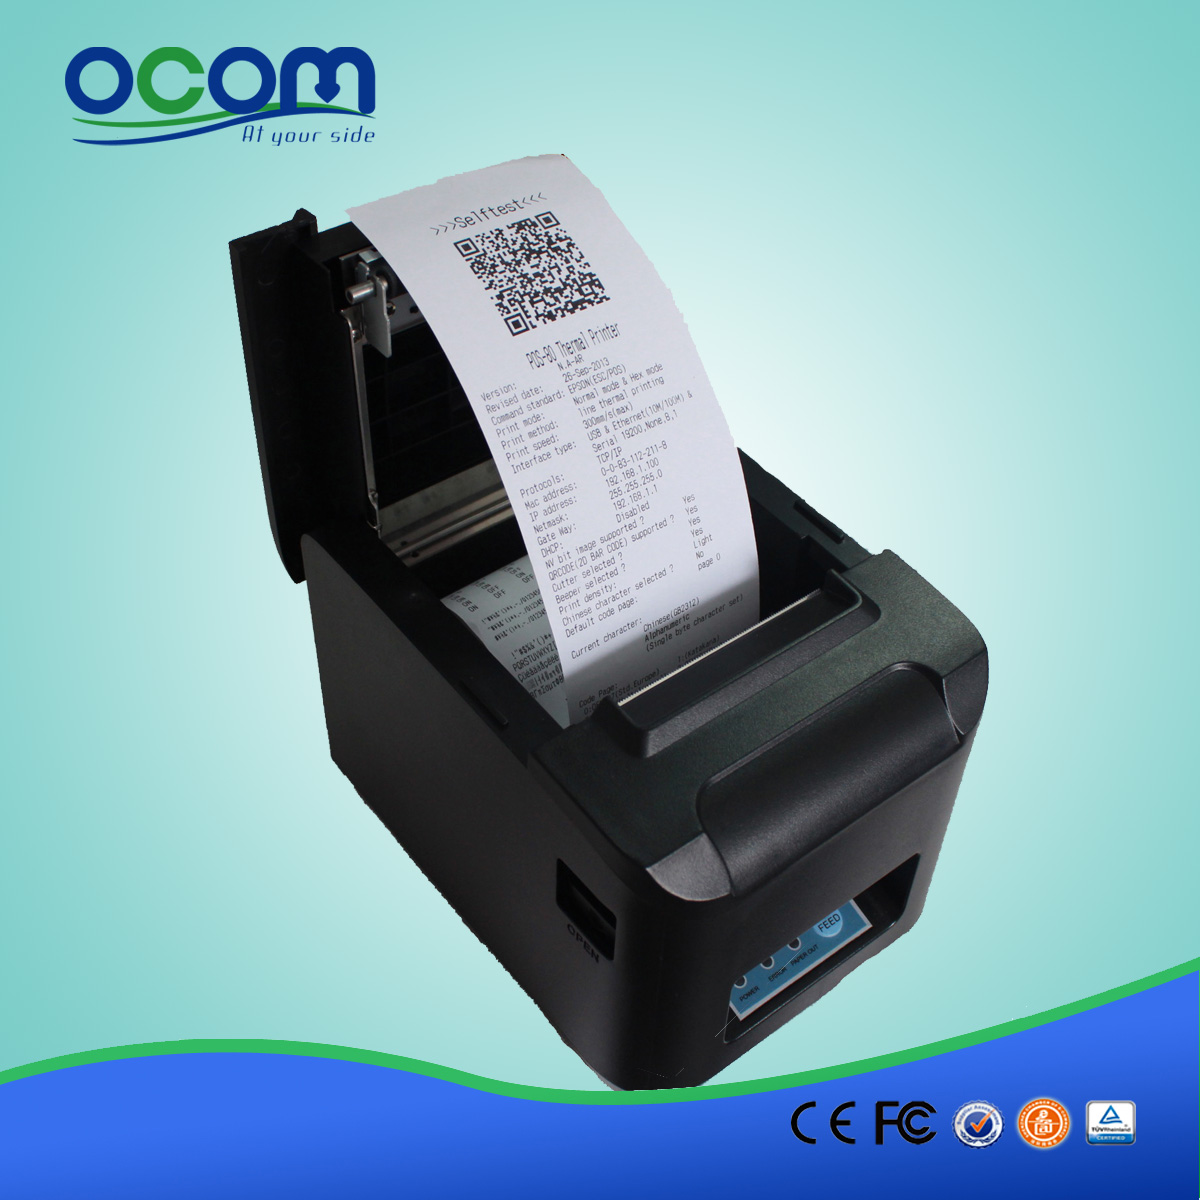 80毫米WIFI安卓热敏打印机 -  OCPP-808-W